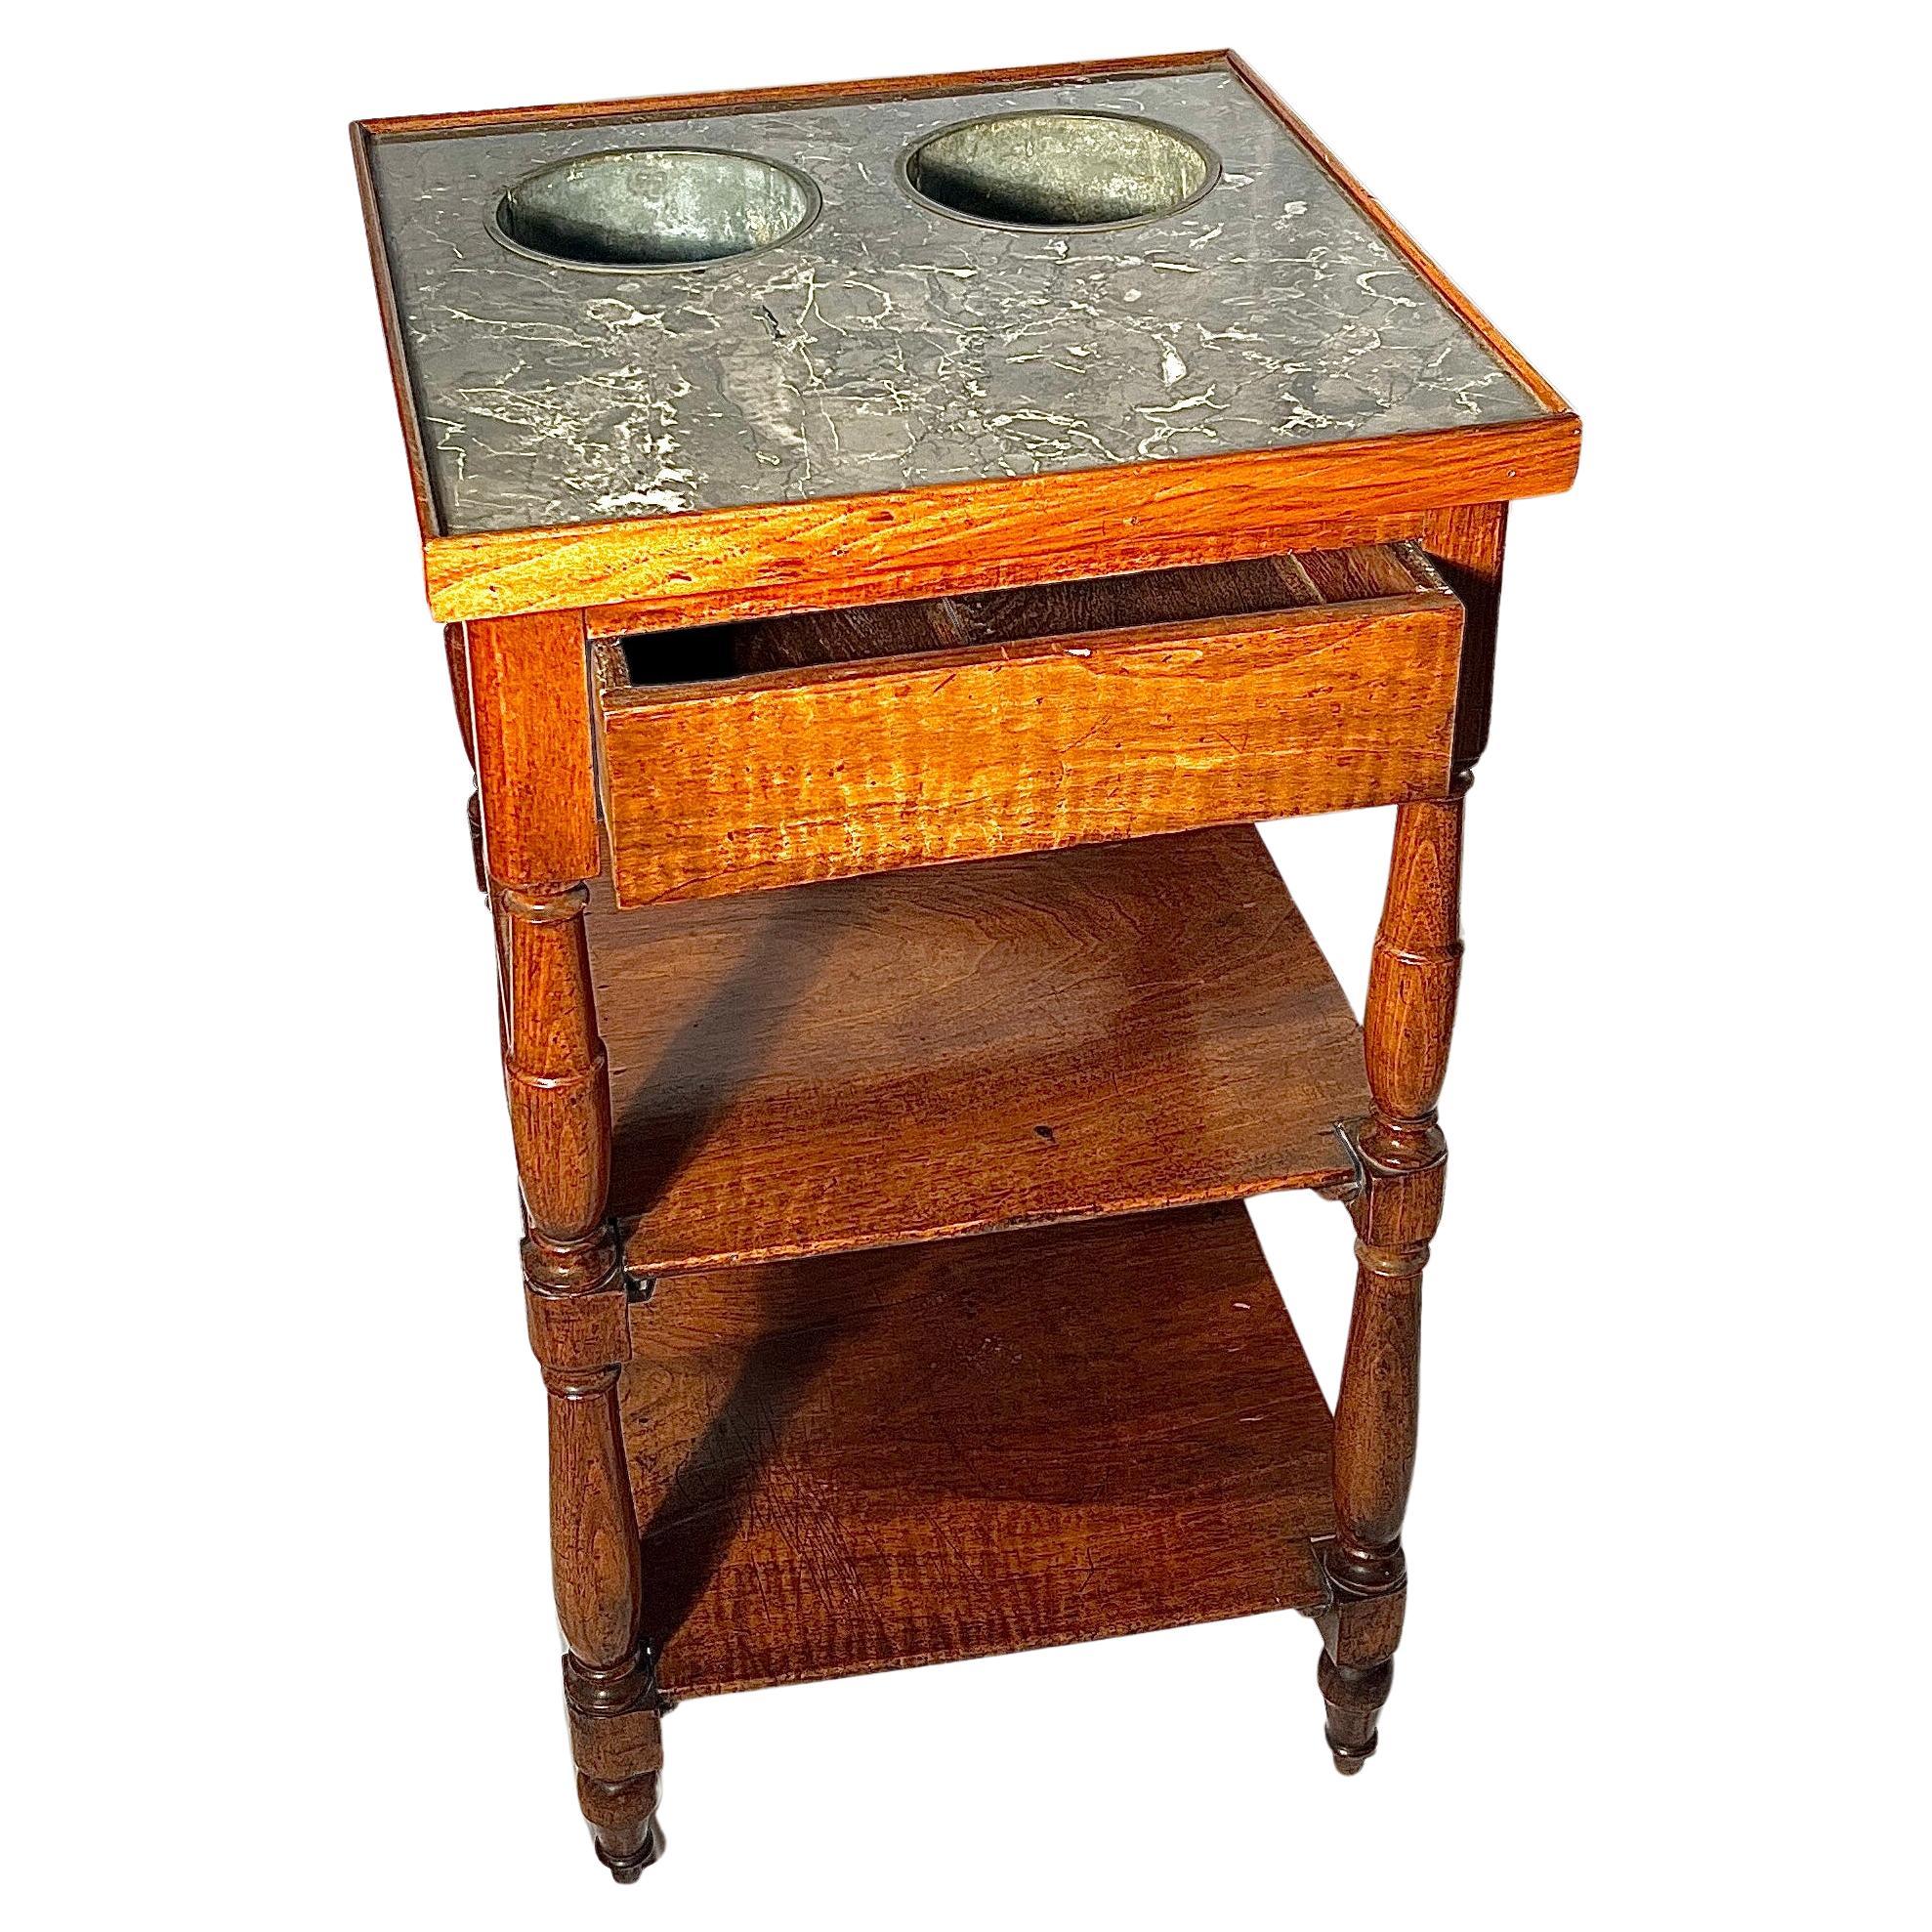 Antiker französischer Provinzial-Weintisch aus Nussbaum und Marmor mit 2 Weinkühlern, um 1900.
Es gibt auch eine Schublade für Utensilien, Servietten, etc.